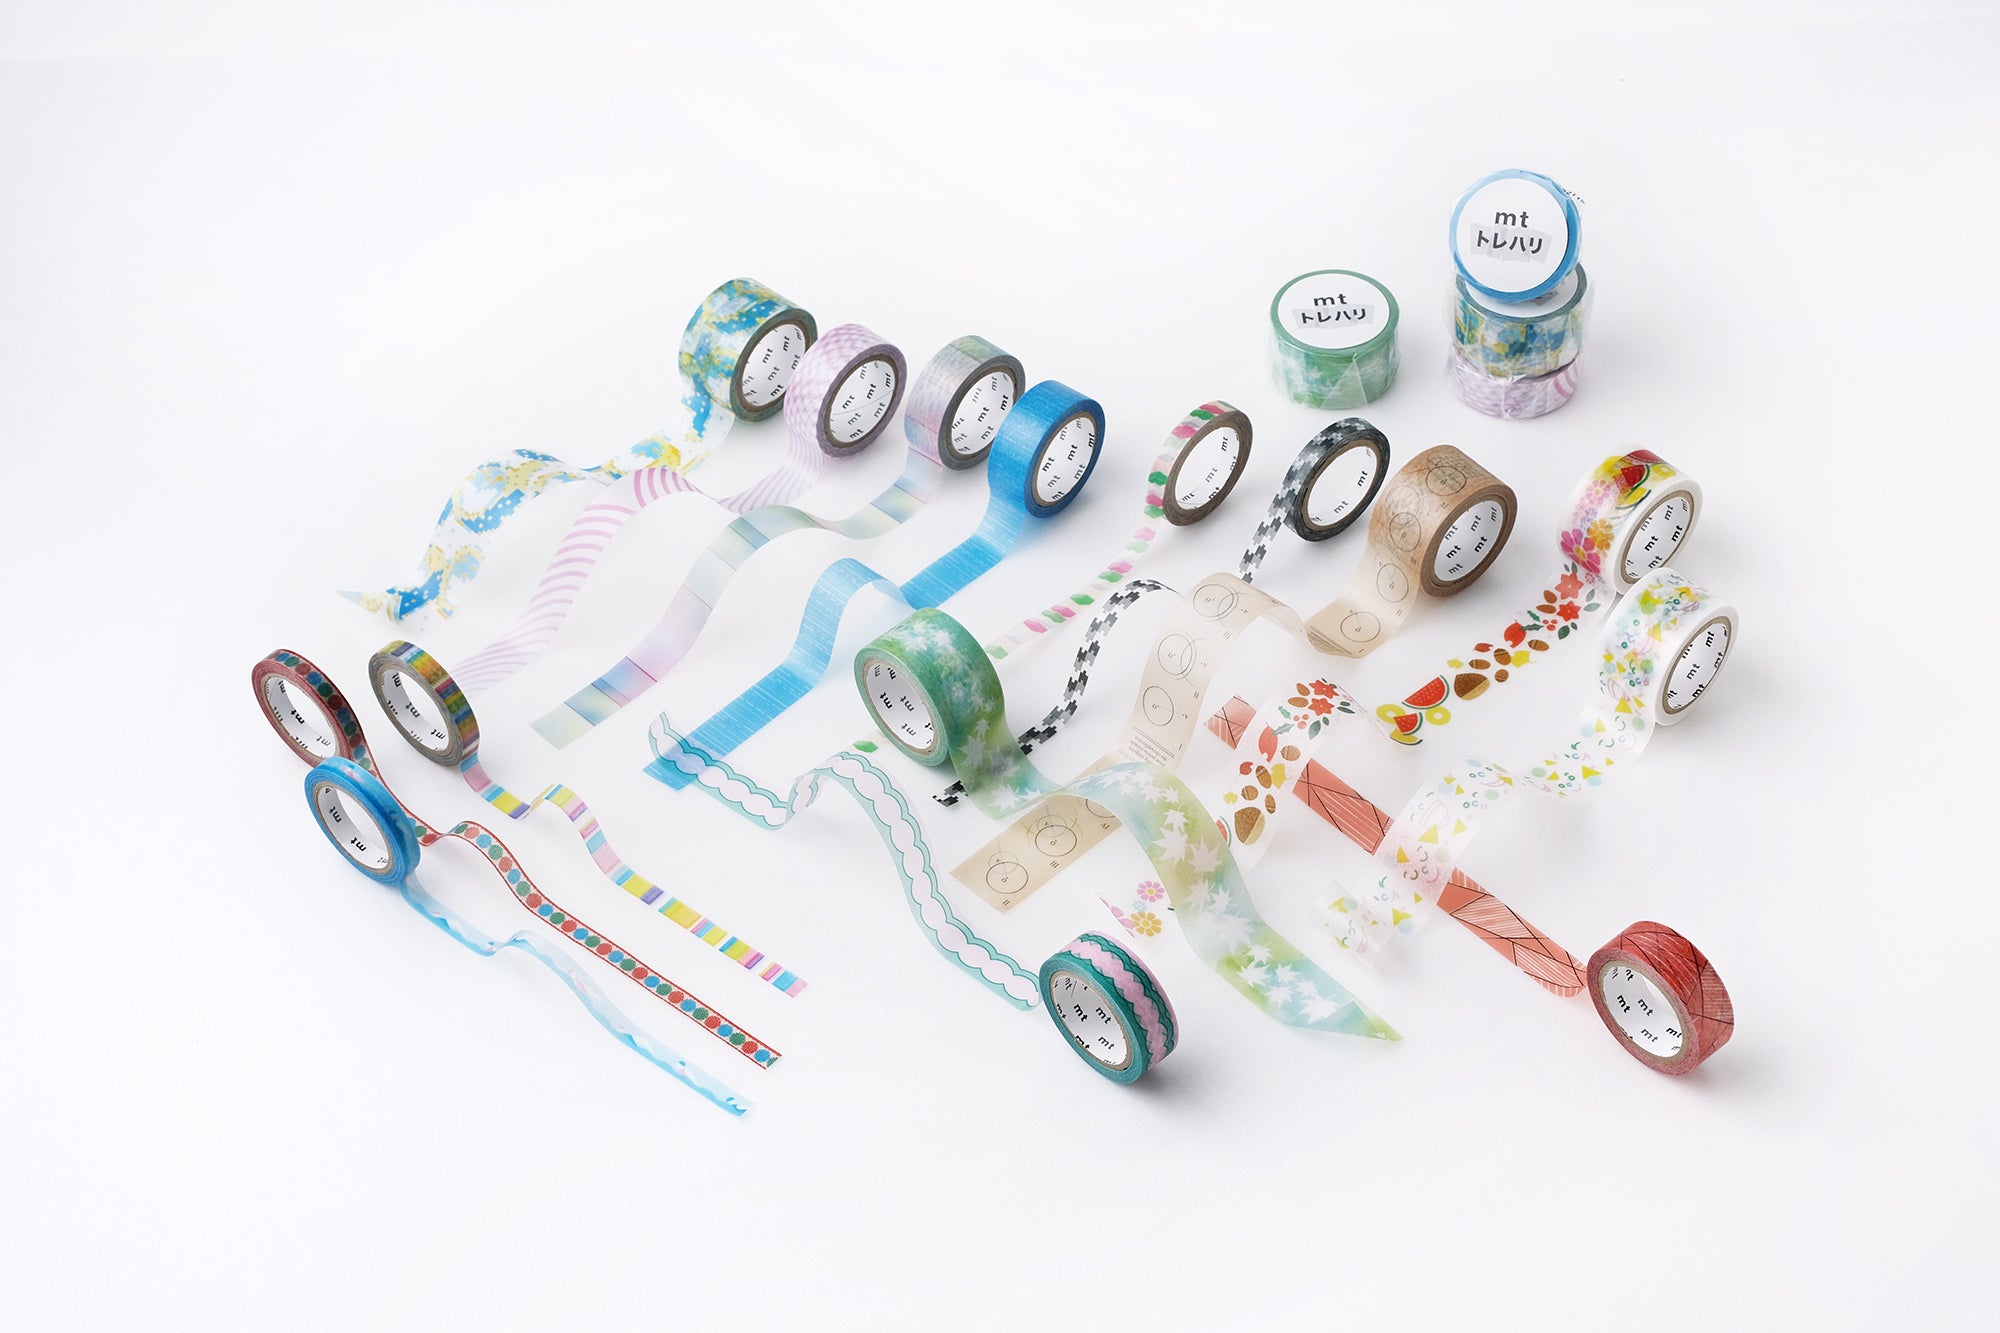 Composizione di diversi washi tape colorati